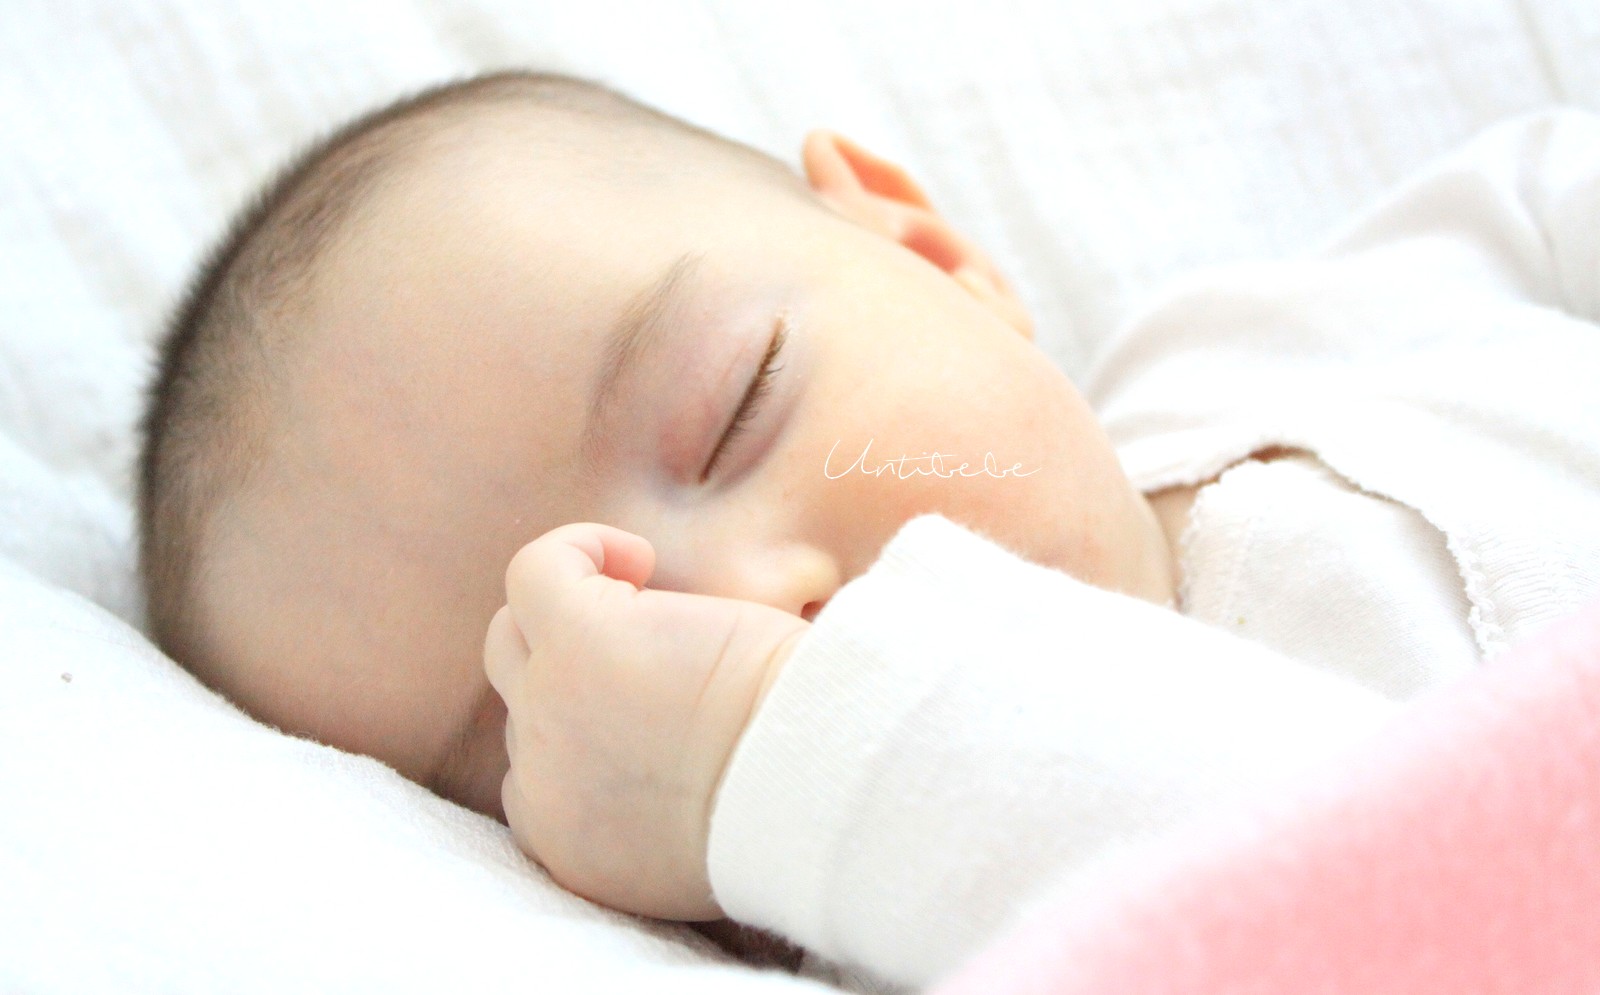 Les indispensables d'une chambre de bébé - Untibebe Blog famille